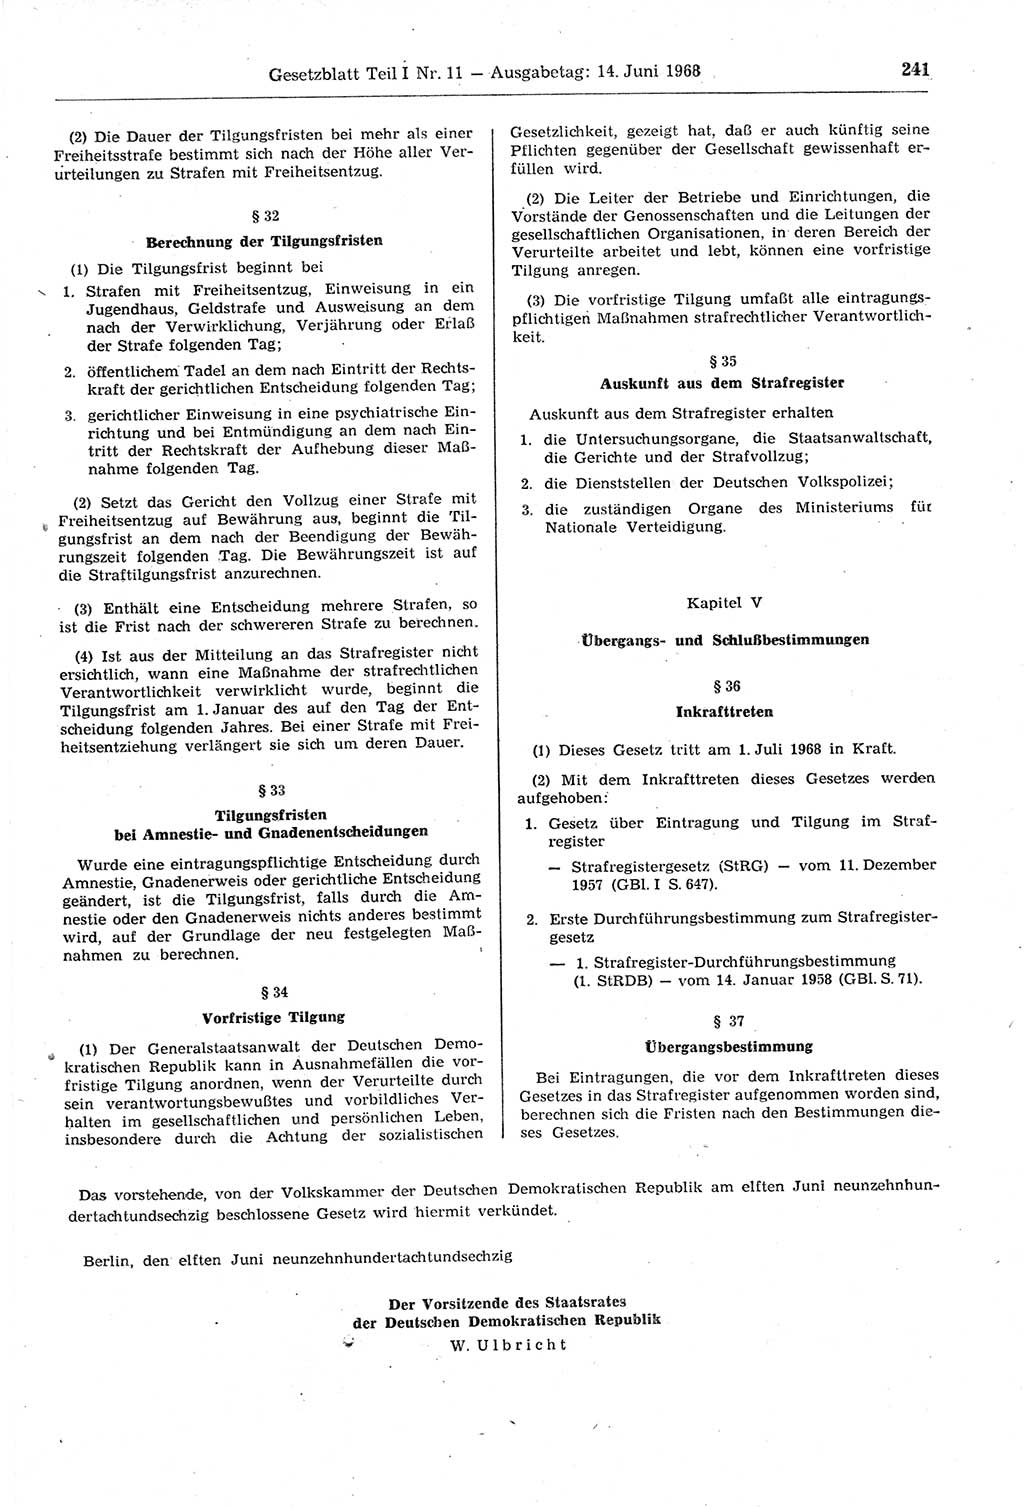 Gesetzblatt (GBl.) der Deutschen Demokratischen Republik (DDR) Teil Ⅰ 1968, Seite 241 (GBl. DDR Ⅰ 1968, S. 241)